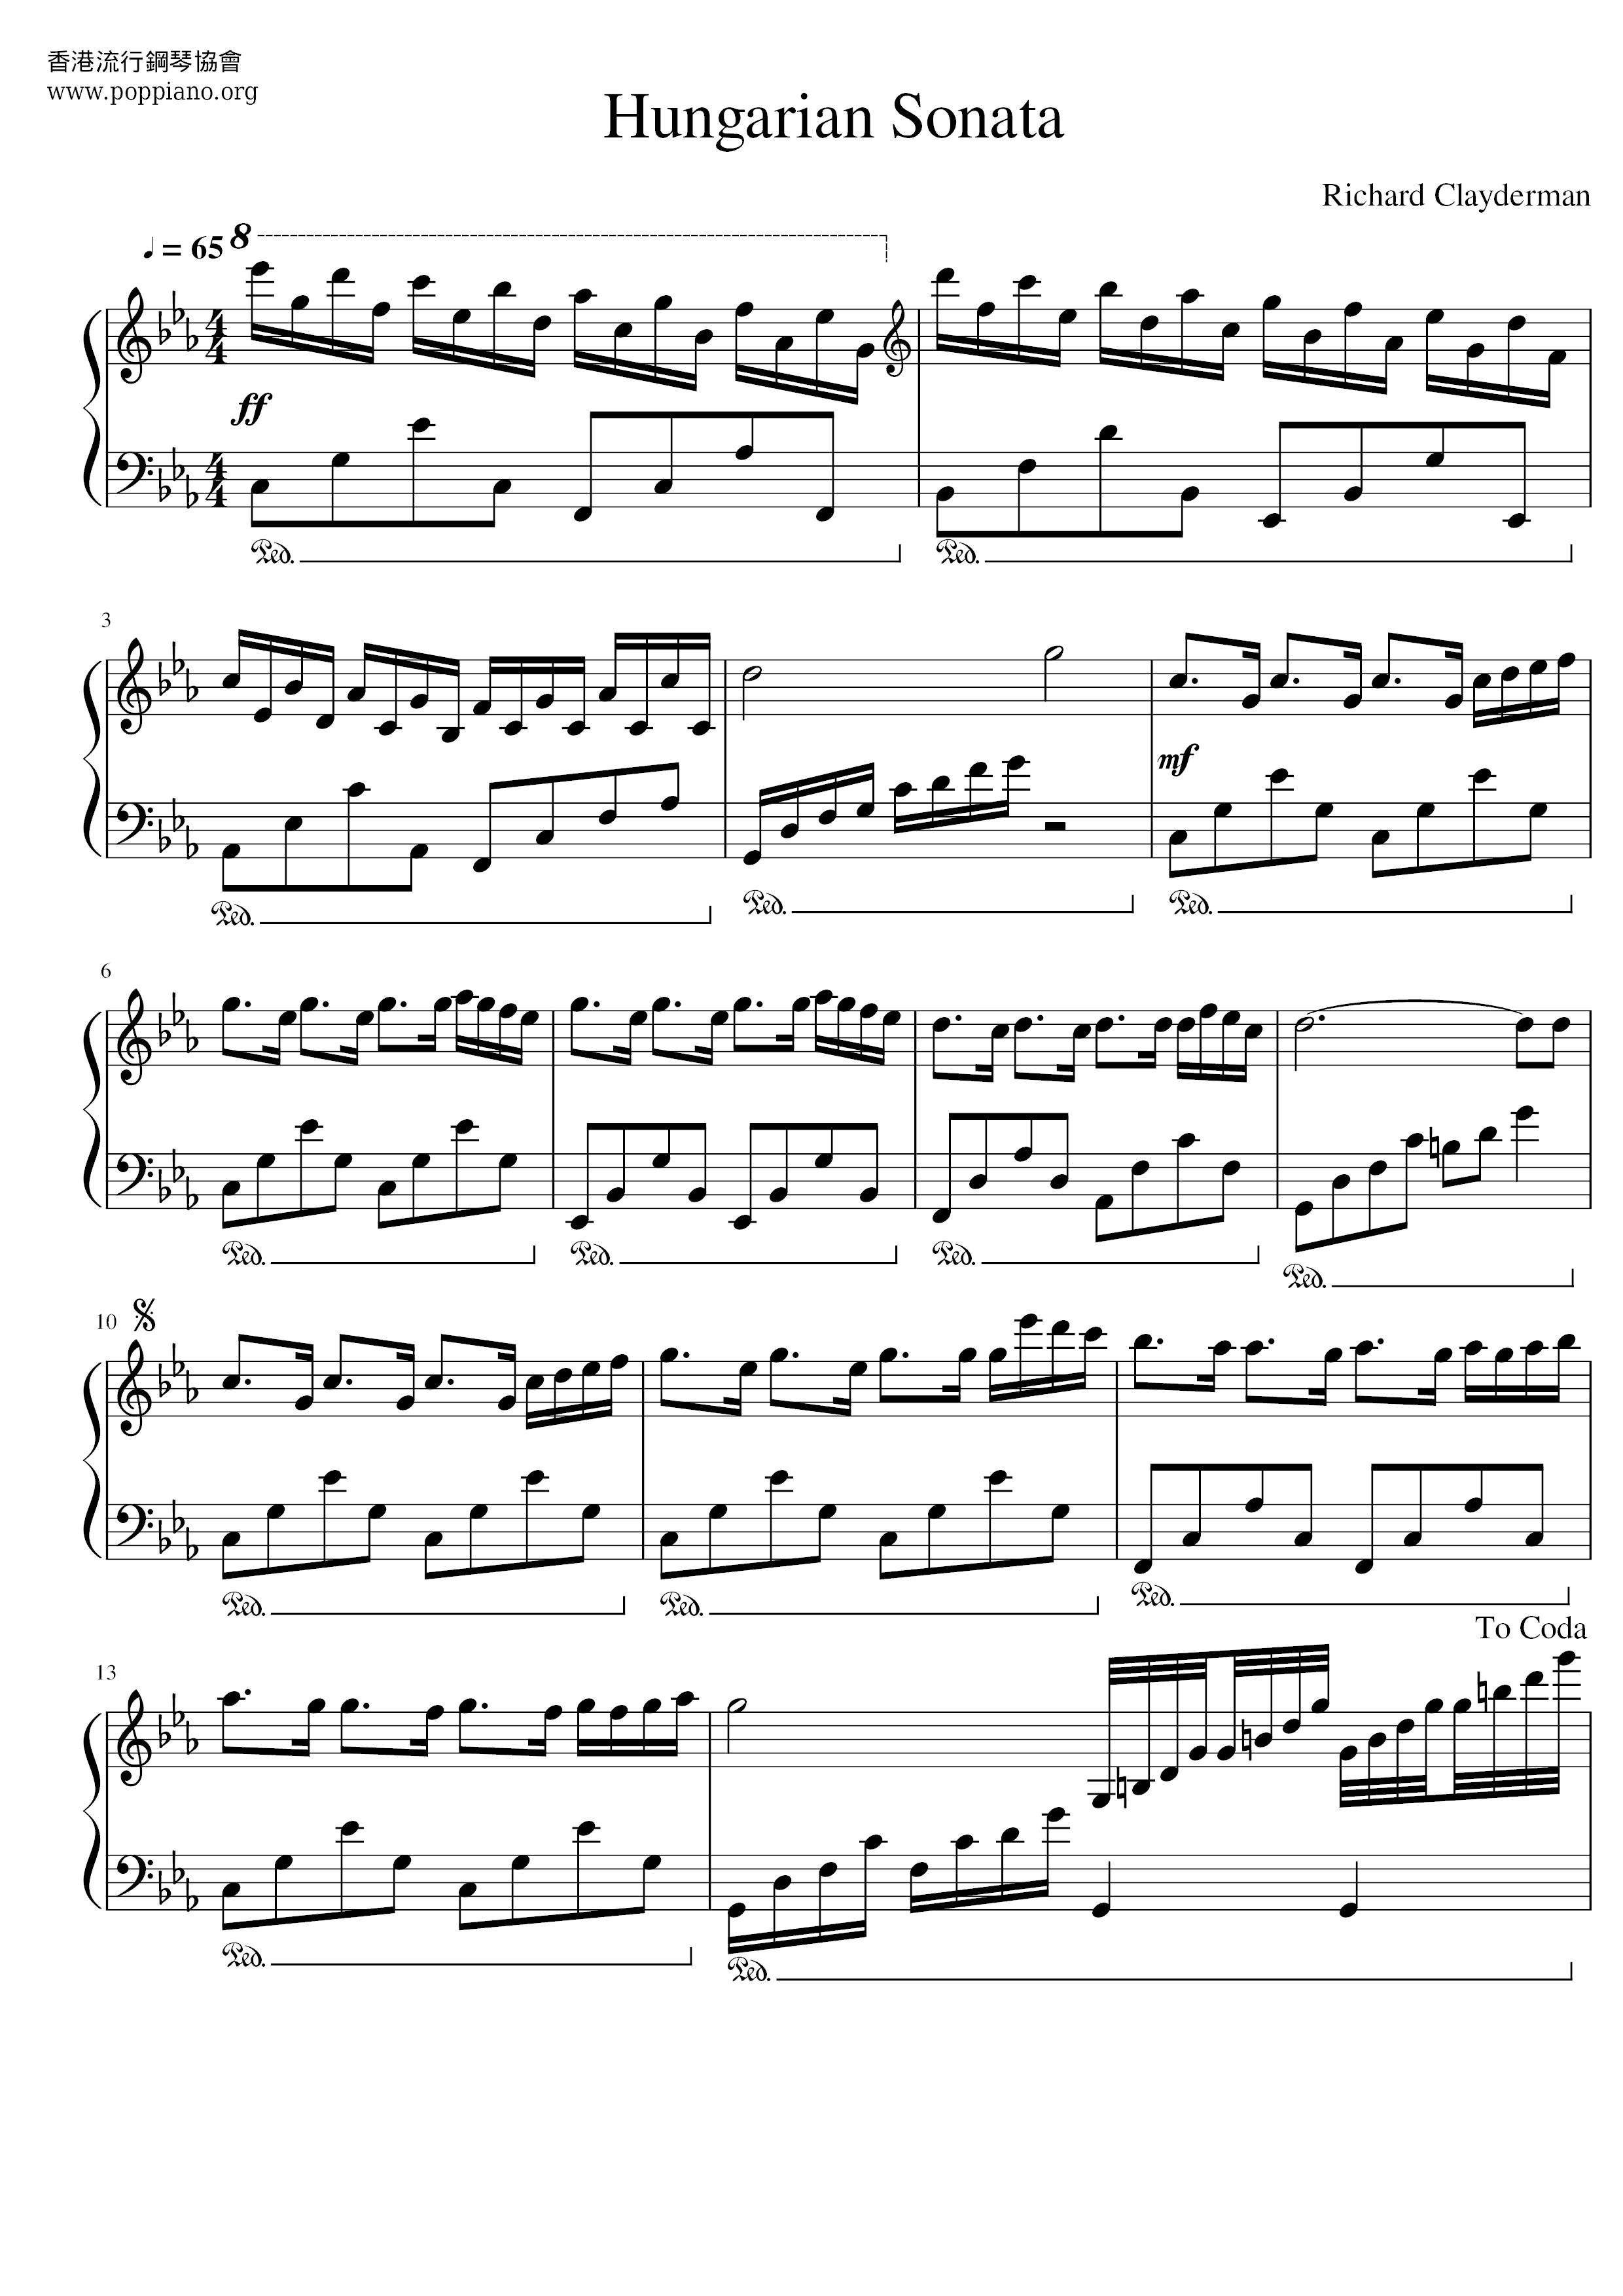 Hungarian Sonata Score